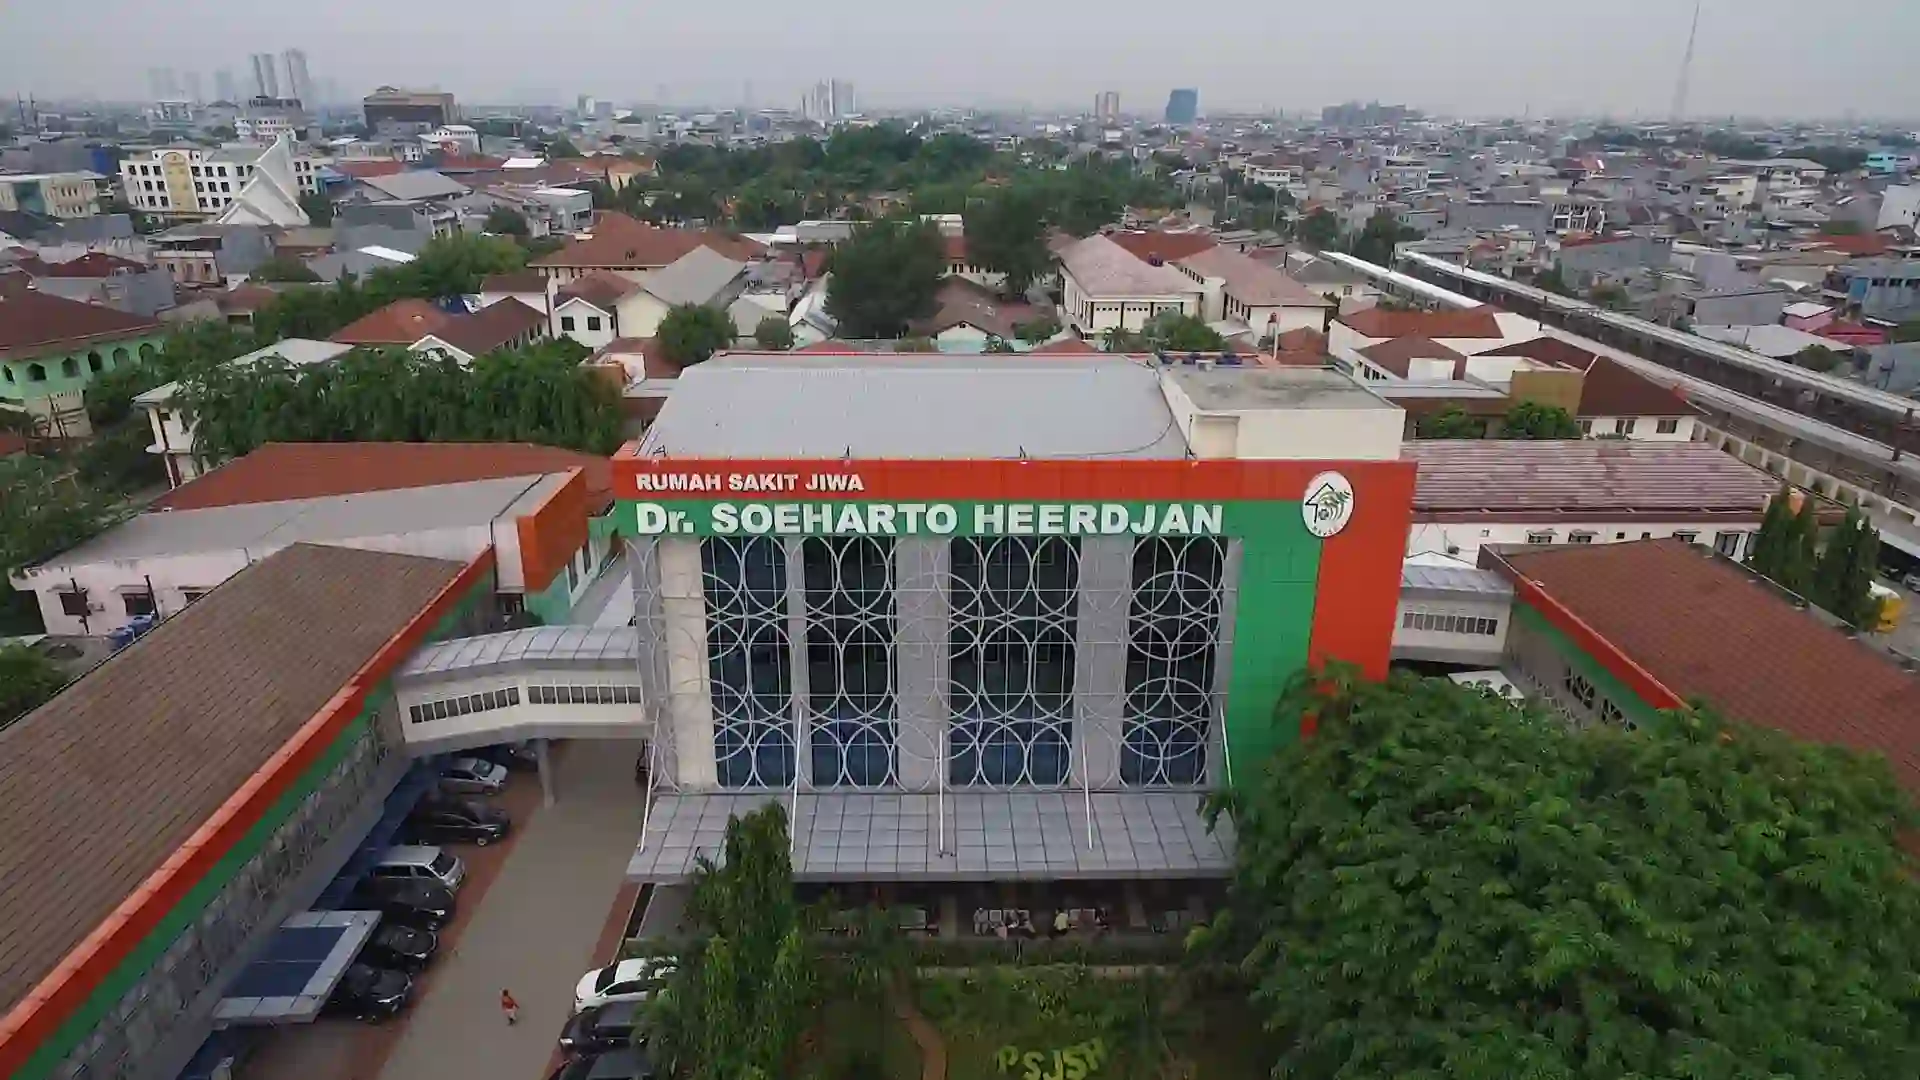 2. Rumah Sakit Jiwa Dr. Soeharto Heerdjan